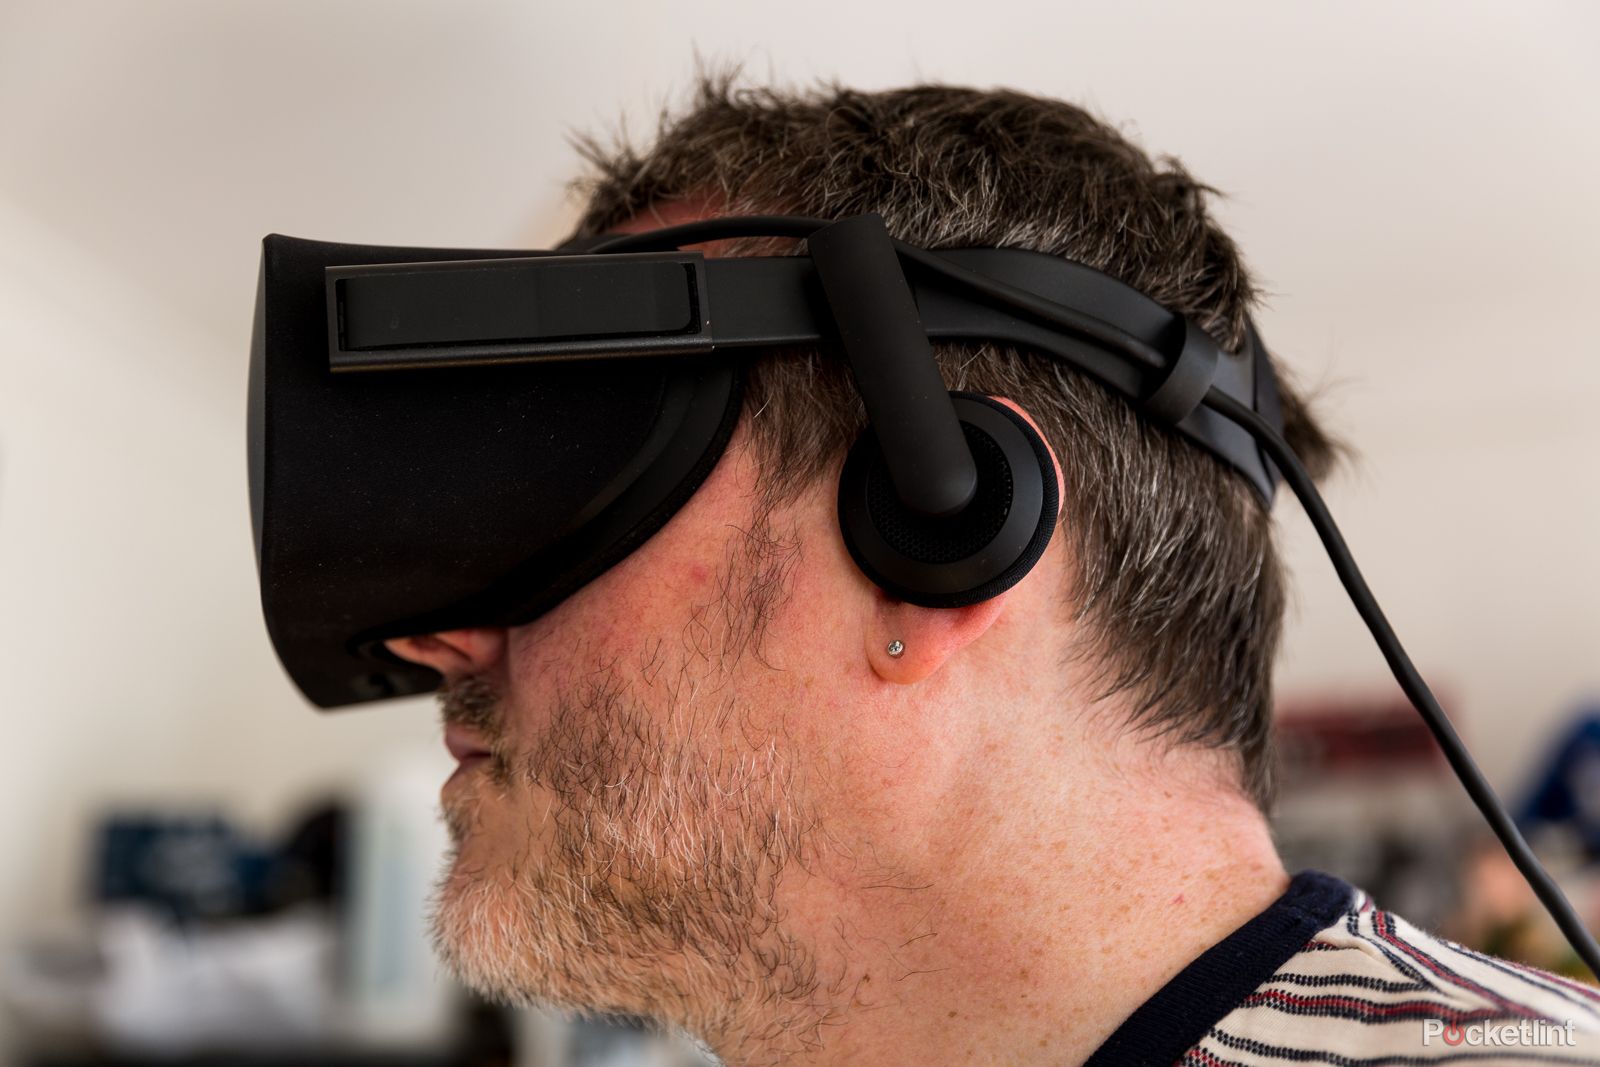 Oculus Rift review 